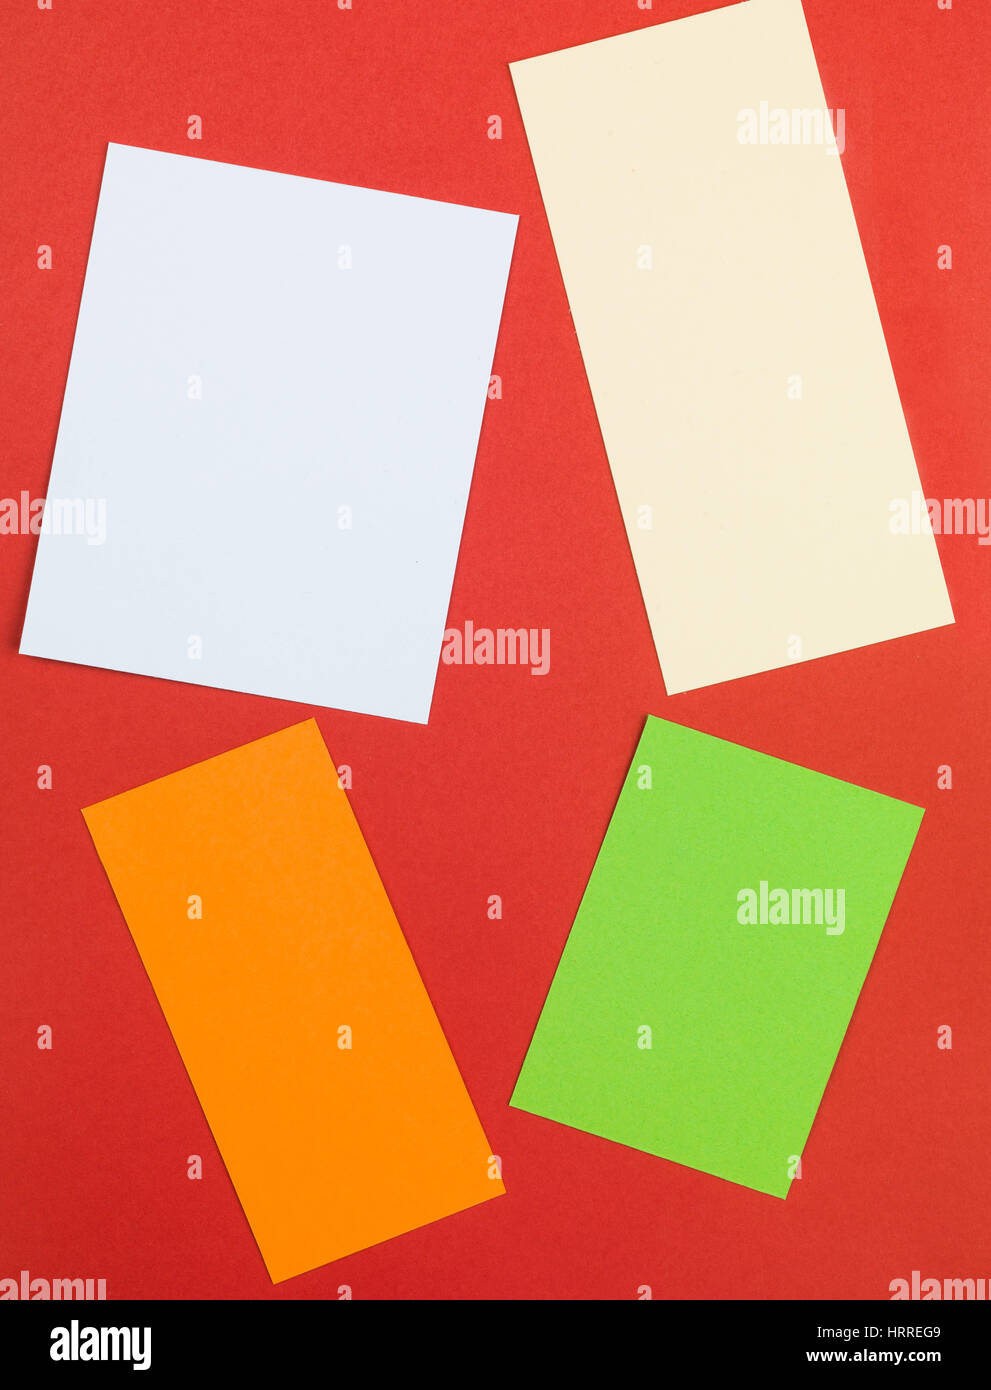 Illustrazione di forma rettangolare a quattro blocchi di testo contro uno sfondo rosso Foto Stock